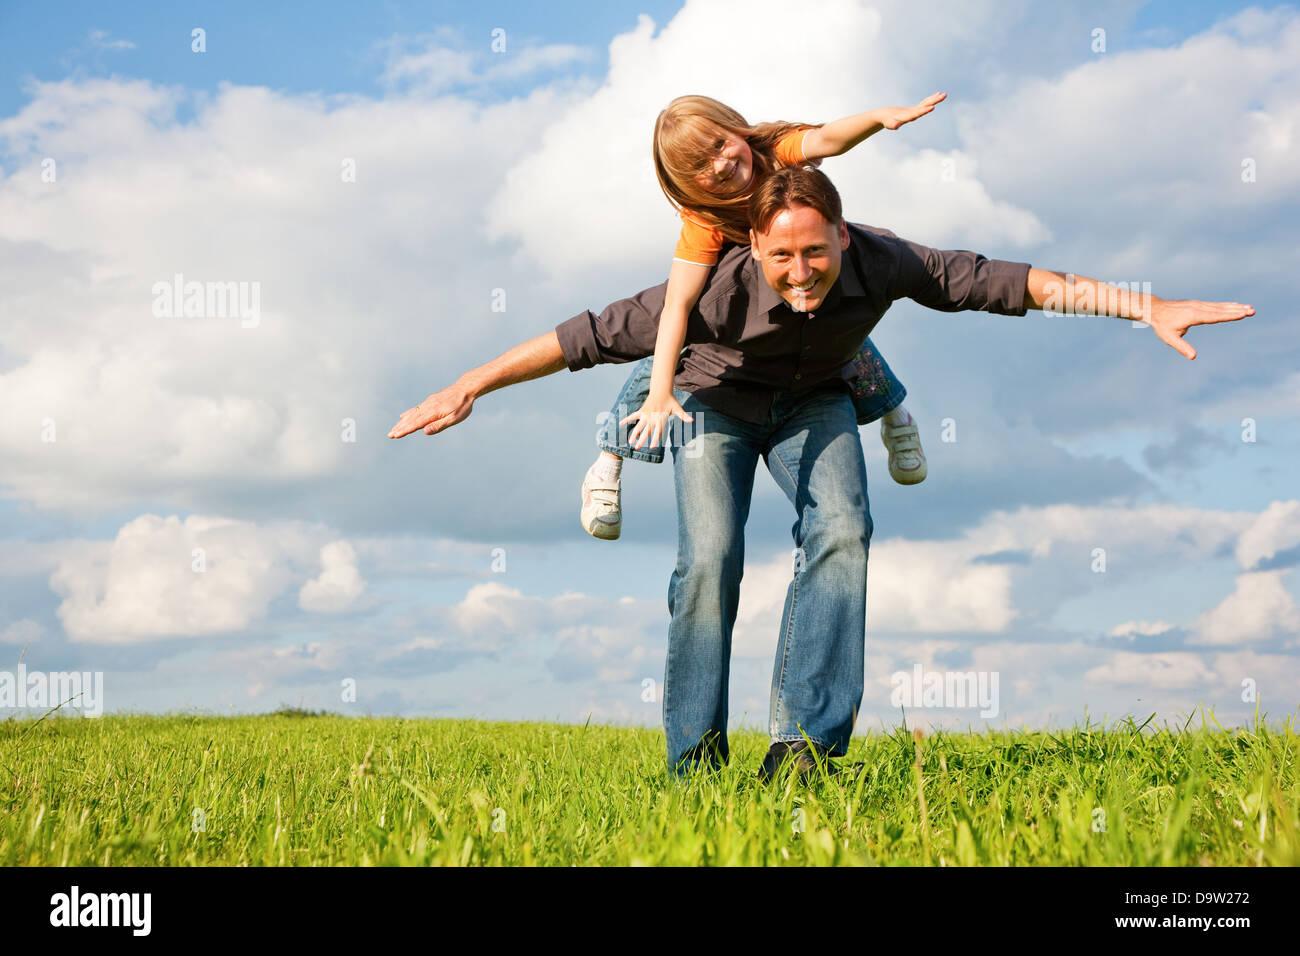 Vater und sein Kind - Tochter - zusammen auf einer Wiese zu spielen, ist er ihr Huckepack tragen. Stockfoto